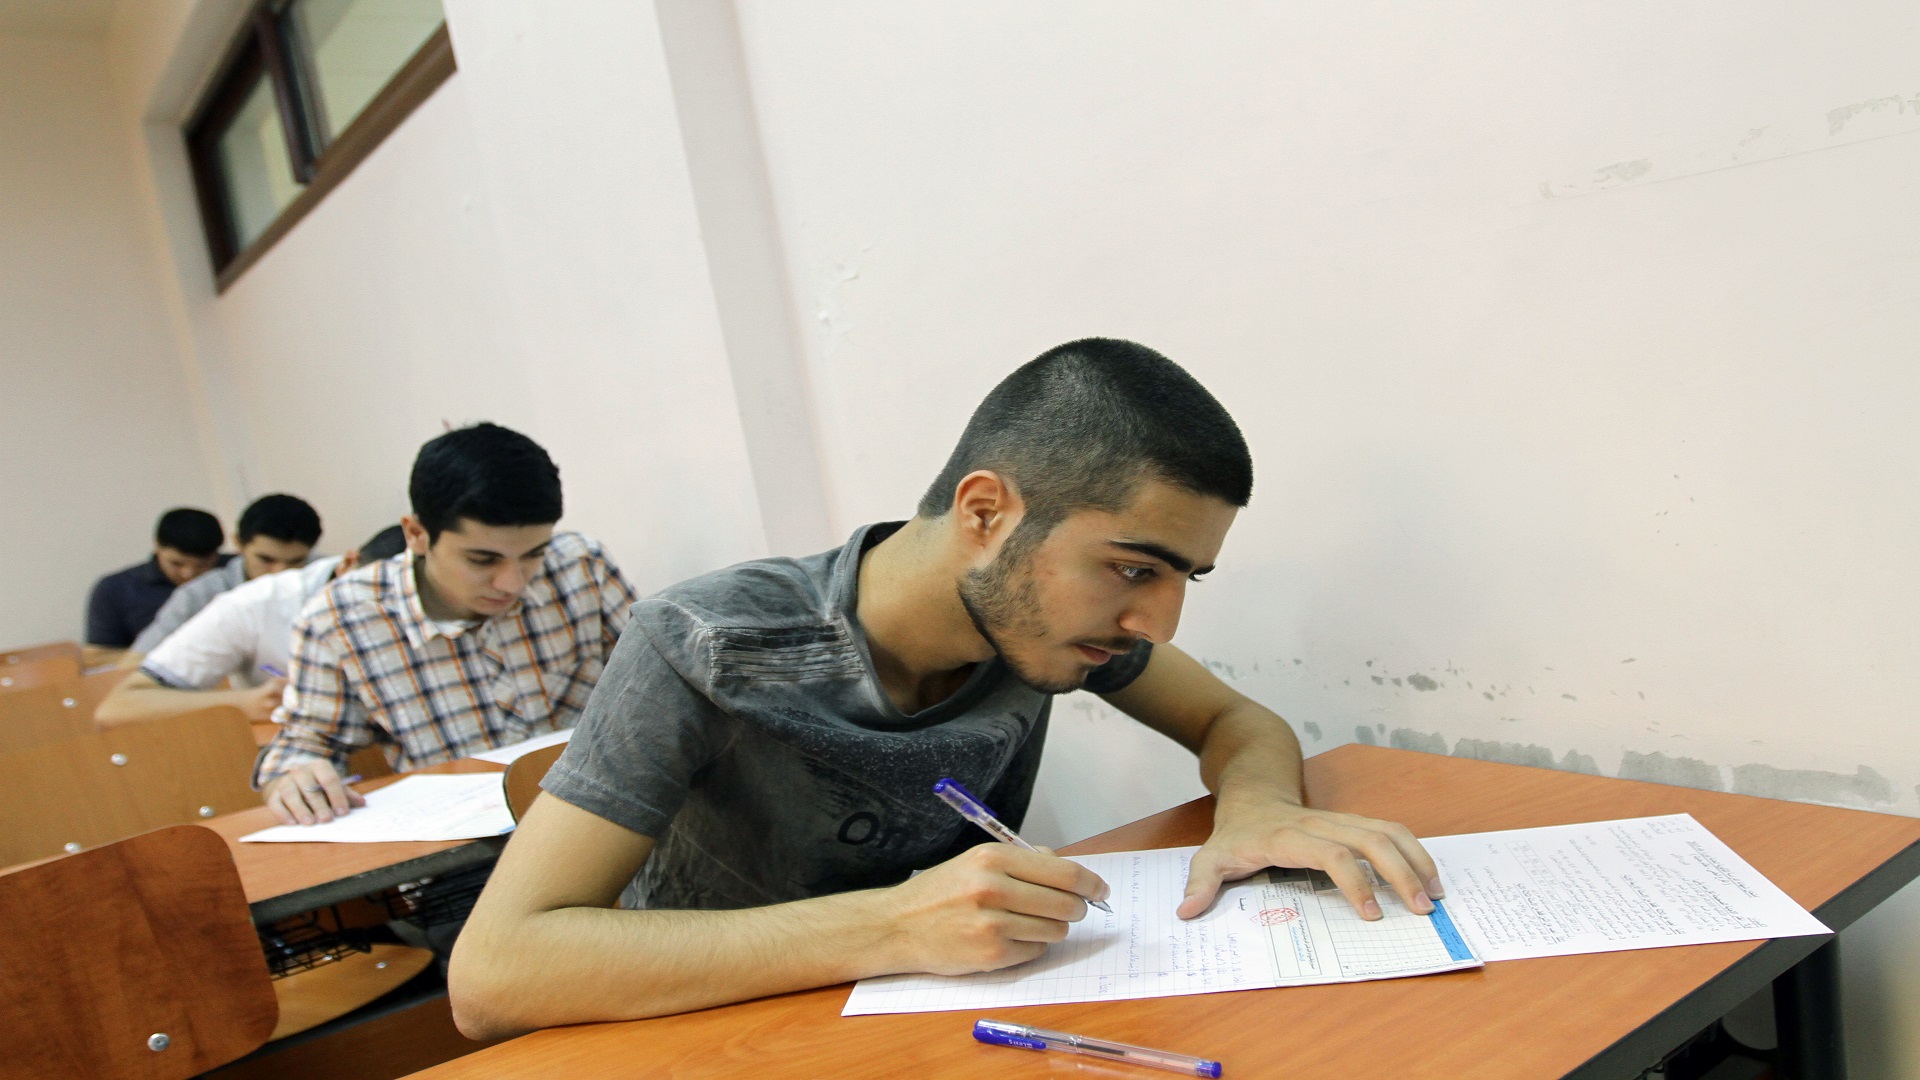 ألوان محلية| جامعة إدلب .. بديل لغياب التعليم أم خطوة لتطويره